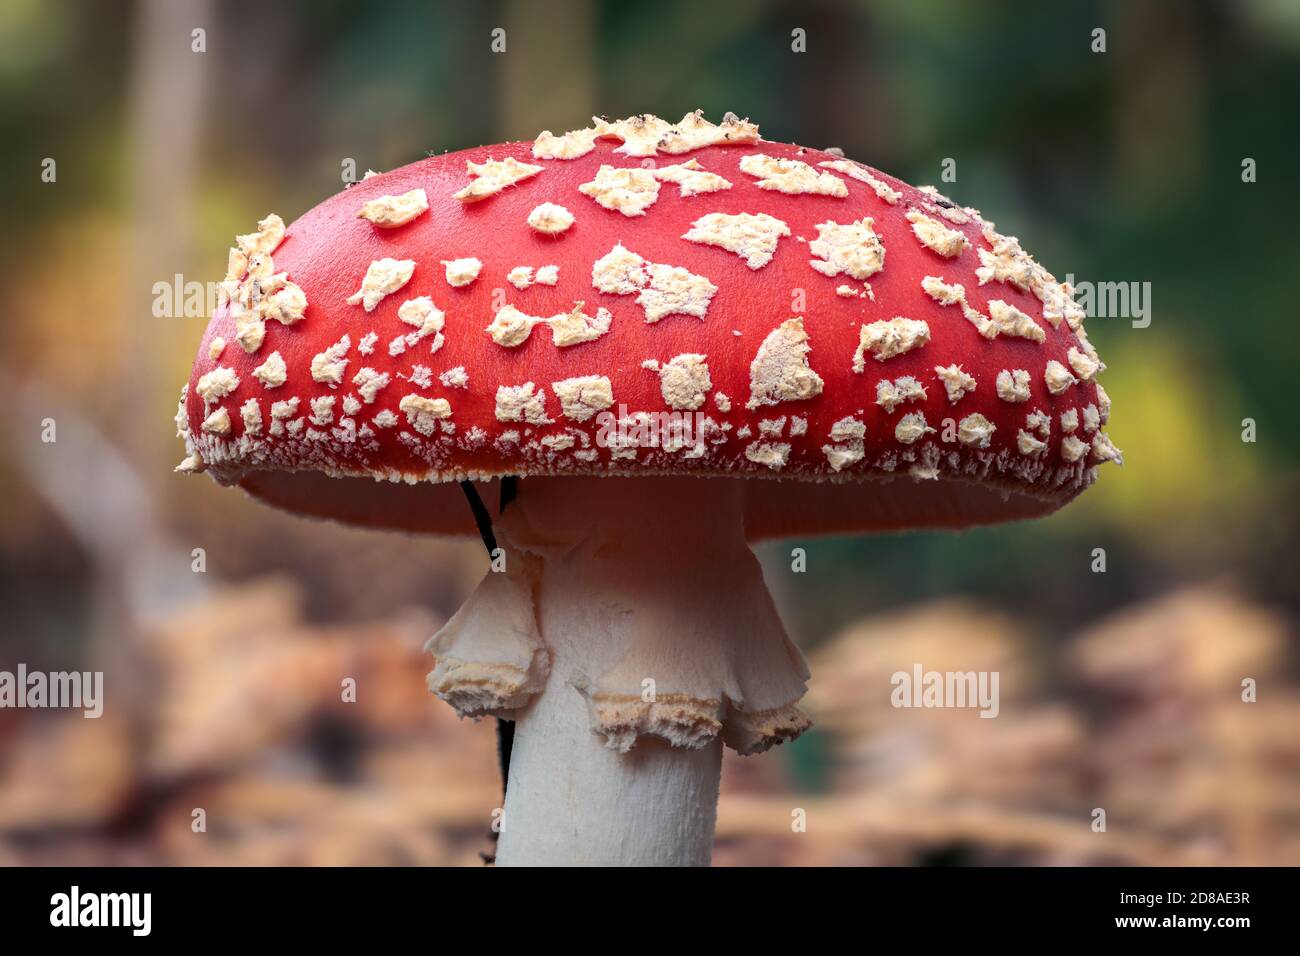 Nahaufnahme eines Rotfliegenpilzes mit einer weiß gefleckten Pilzkappe, auch bekannt als Toadstool und ist die beliebteste Pilzart, die als virtuelle Meeti verwendet wird Stockfoto